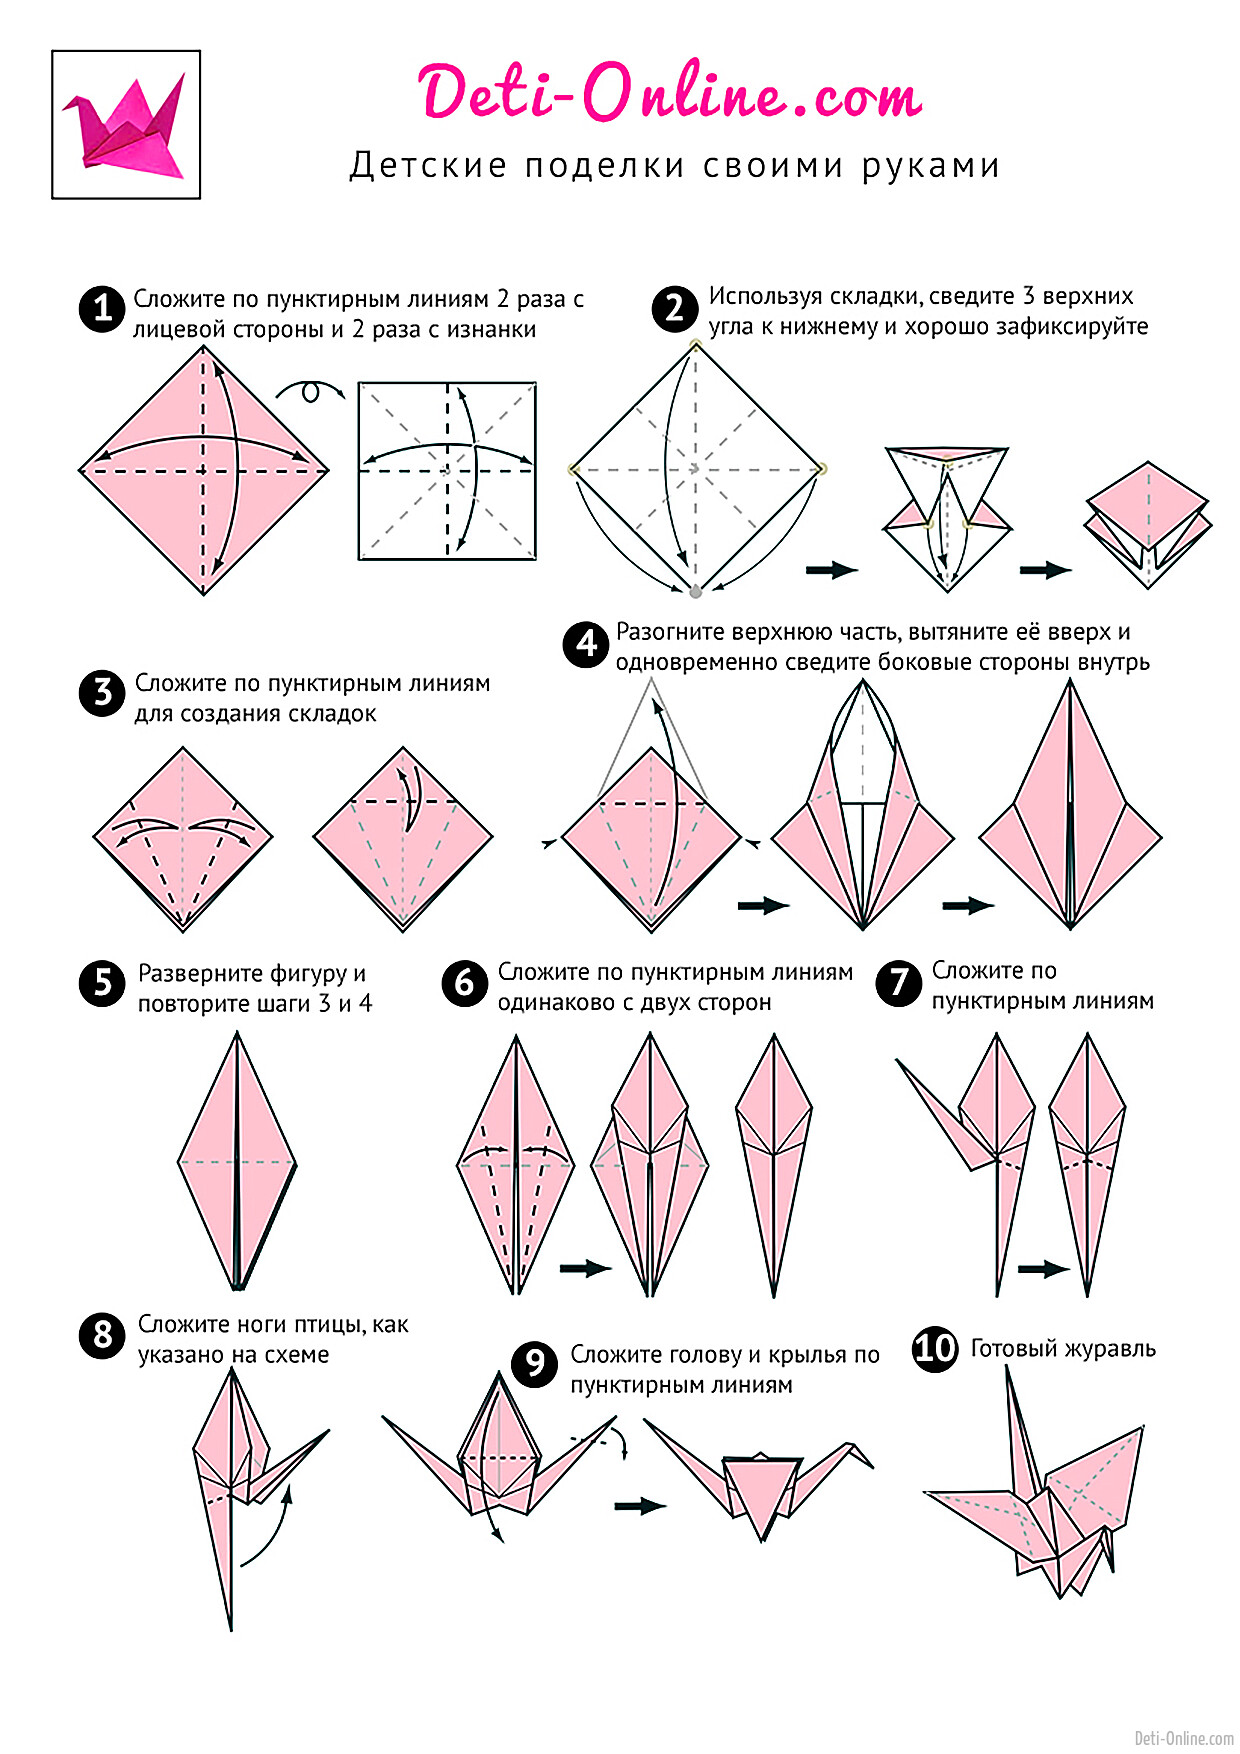 Бумажные журавлики как сделать. Журавлик из бумаги схема складывания. Как сделать журавлика из бумаги. Схема журавлика оригами простая для детей. Как сделать журавлика из бумаги пошаговая инструкция.